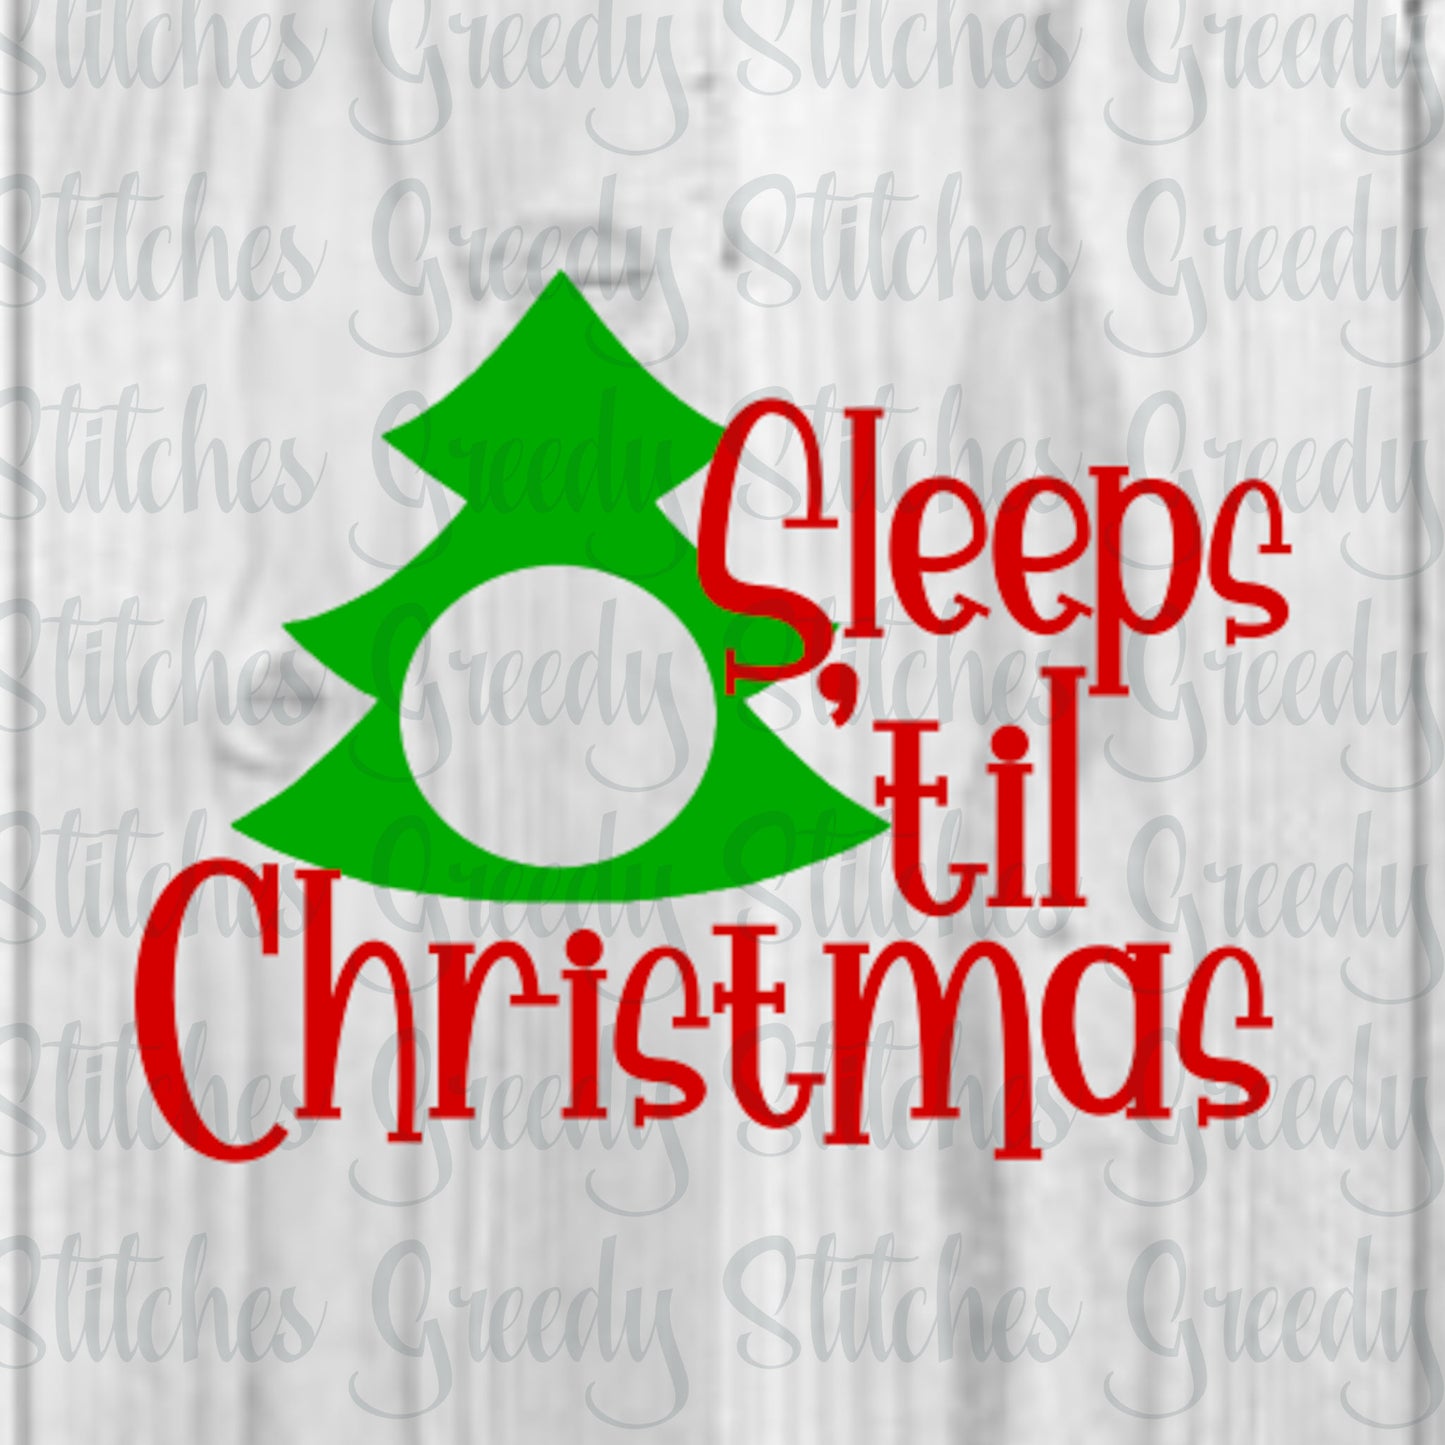 Sleeps &#39;til Christmas SVG. Christmas svg, dxf, eps, png. Christmas DxF | Sleeps &#39;til Christmas DxF | Sleeps &#39;til Christmas SvG | Cut Files.